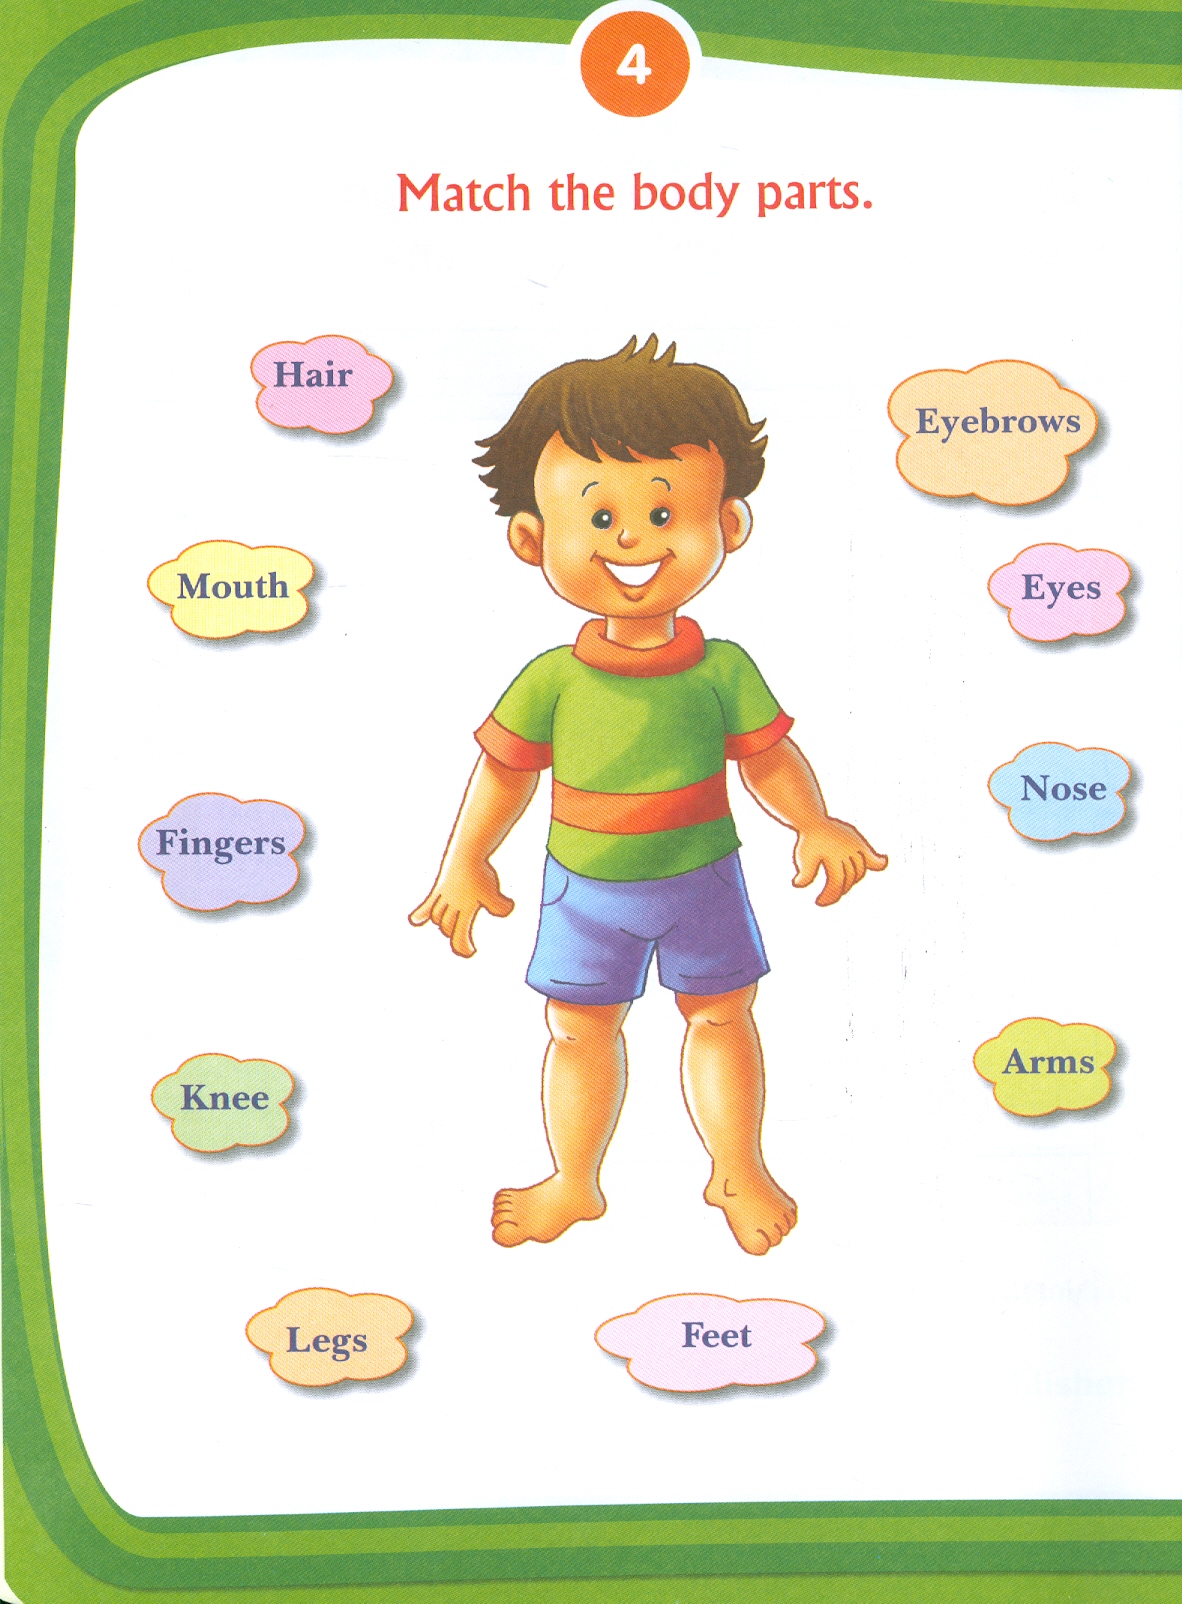 Kid's 2 nd Activity Book Environment - Age 4+ (Các Hoạt Động Môi Trường Cho Trẻ 4+ : Thiên Nhiên Diệu Kỳ)